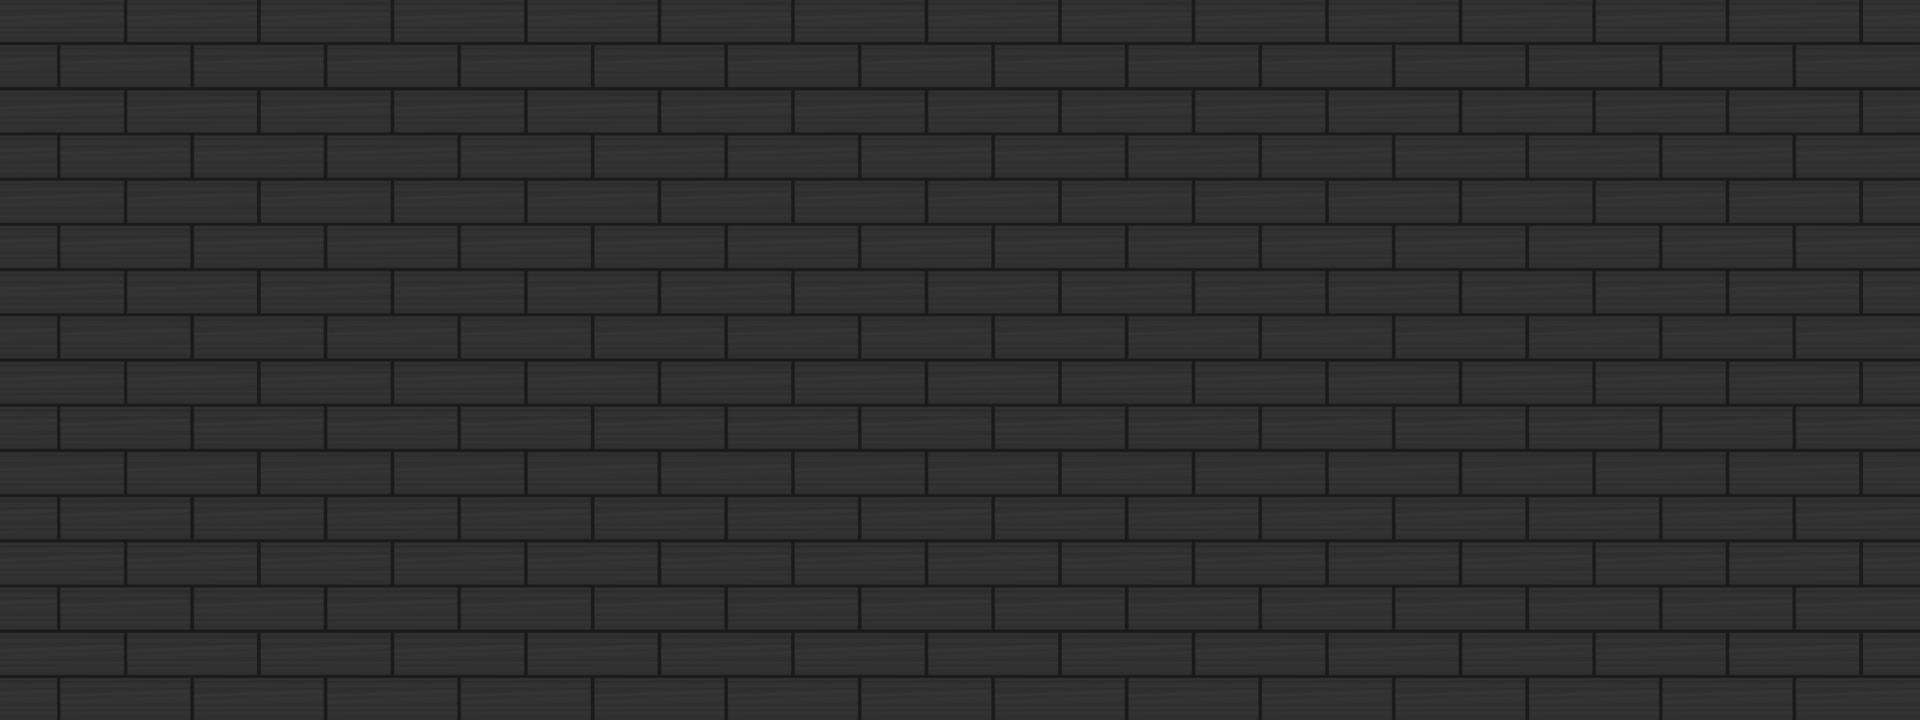 parede de tijolo preto de textura de fundo abstrato para ilustração vetorial decorativa vetor